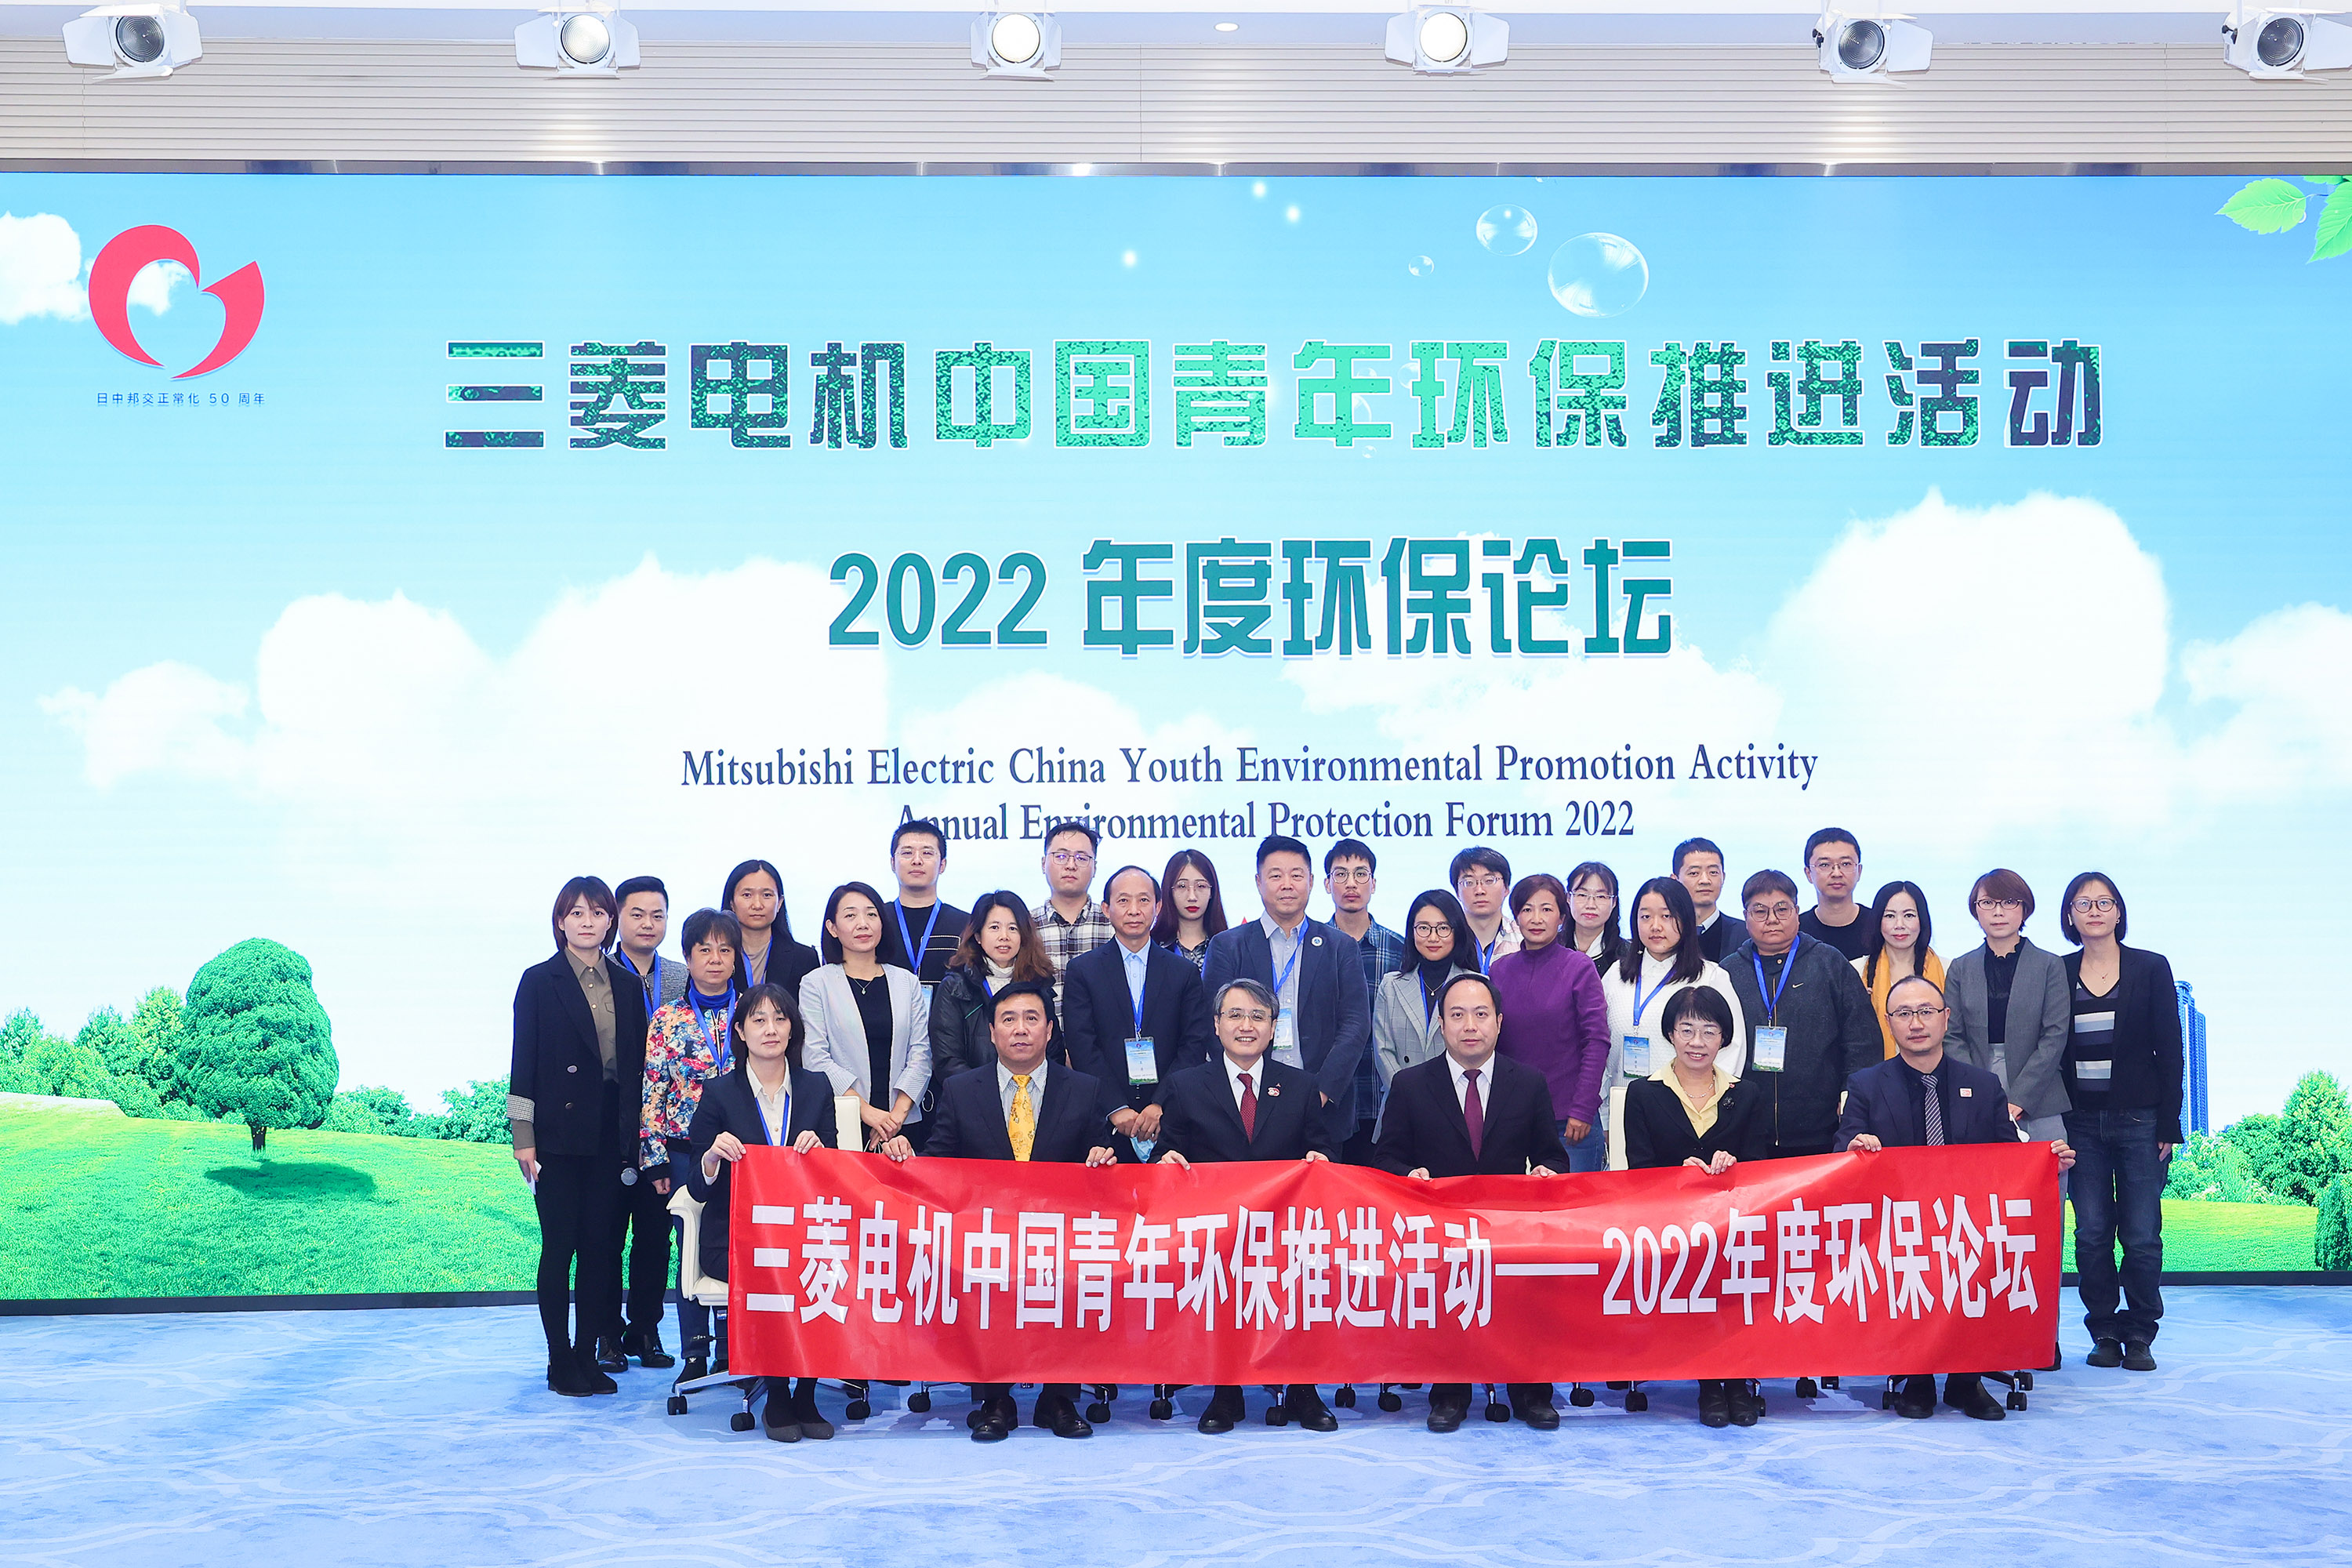 培育未来环保科技人才 三菱电机中国青年环保推进活动 